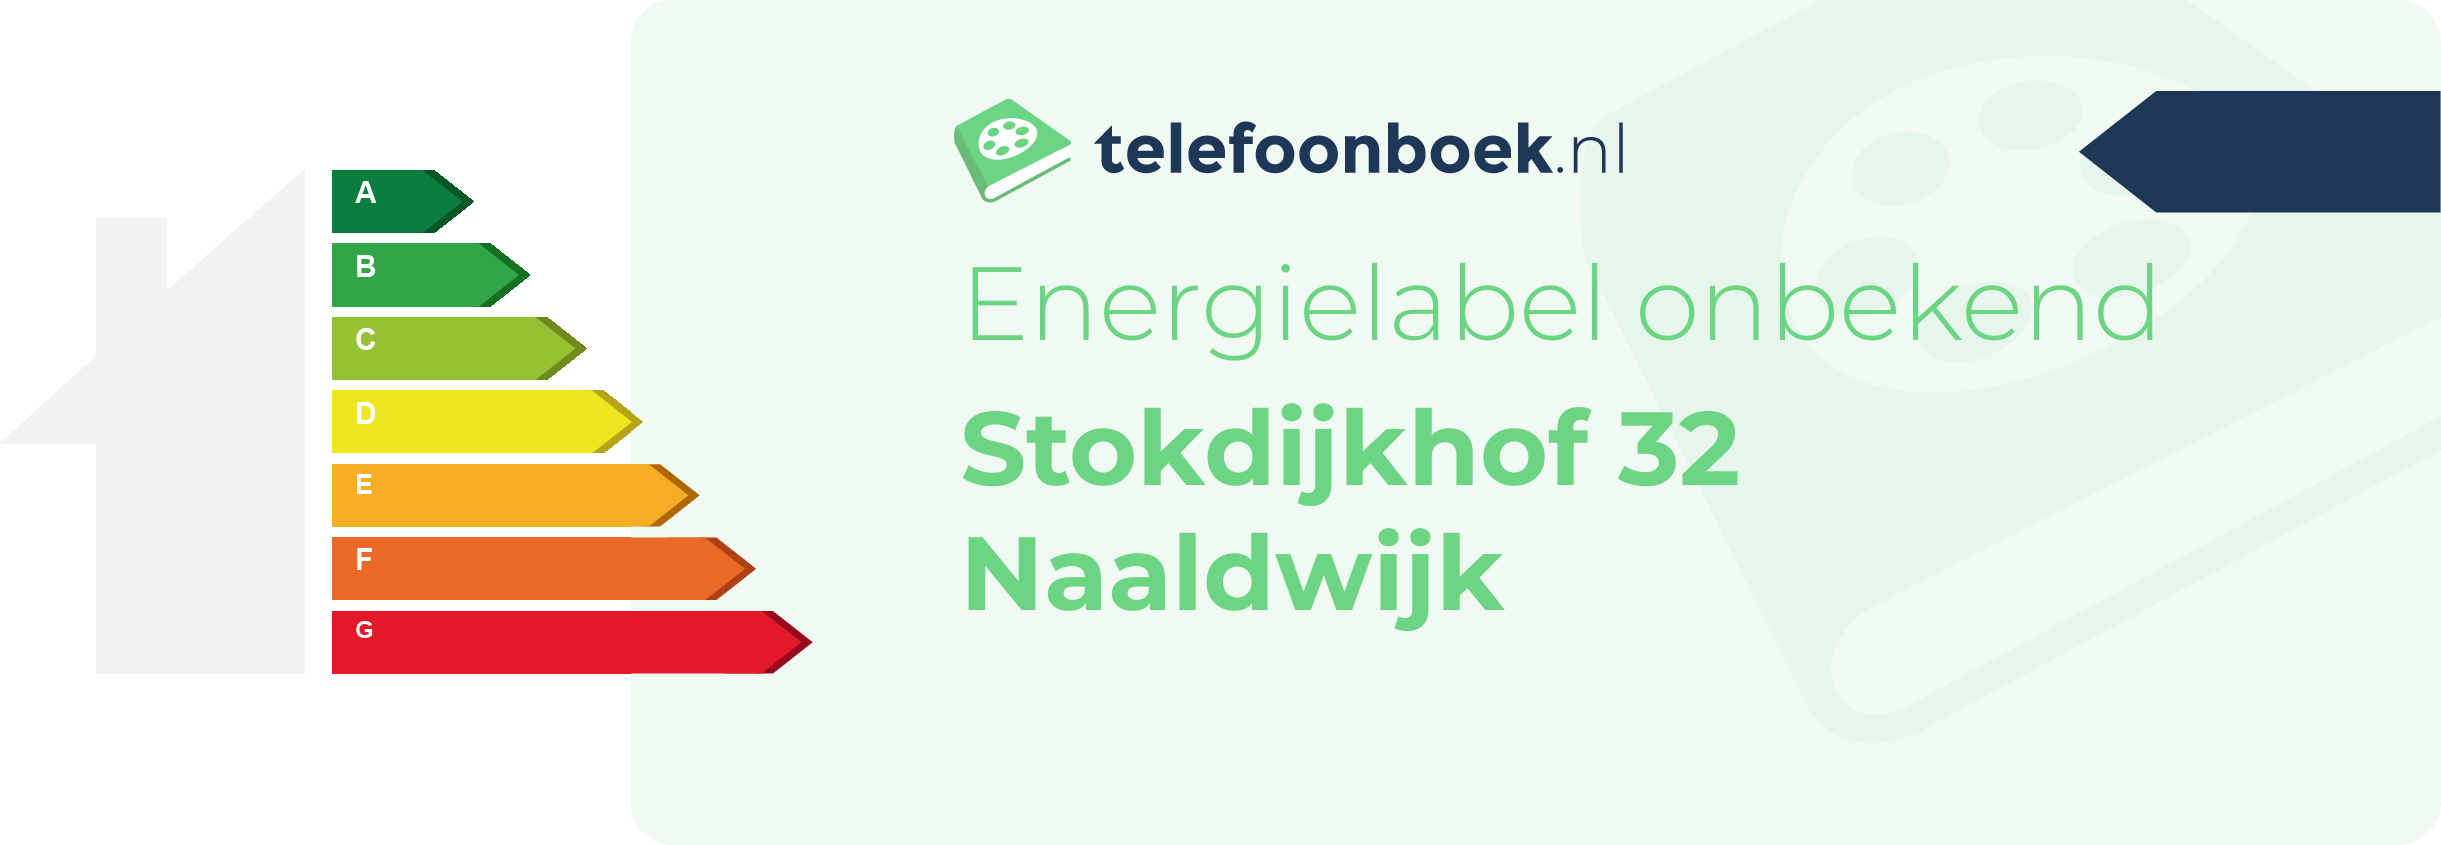 Energielabel Stokdijkhof 32 Naaldwijk